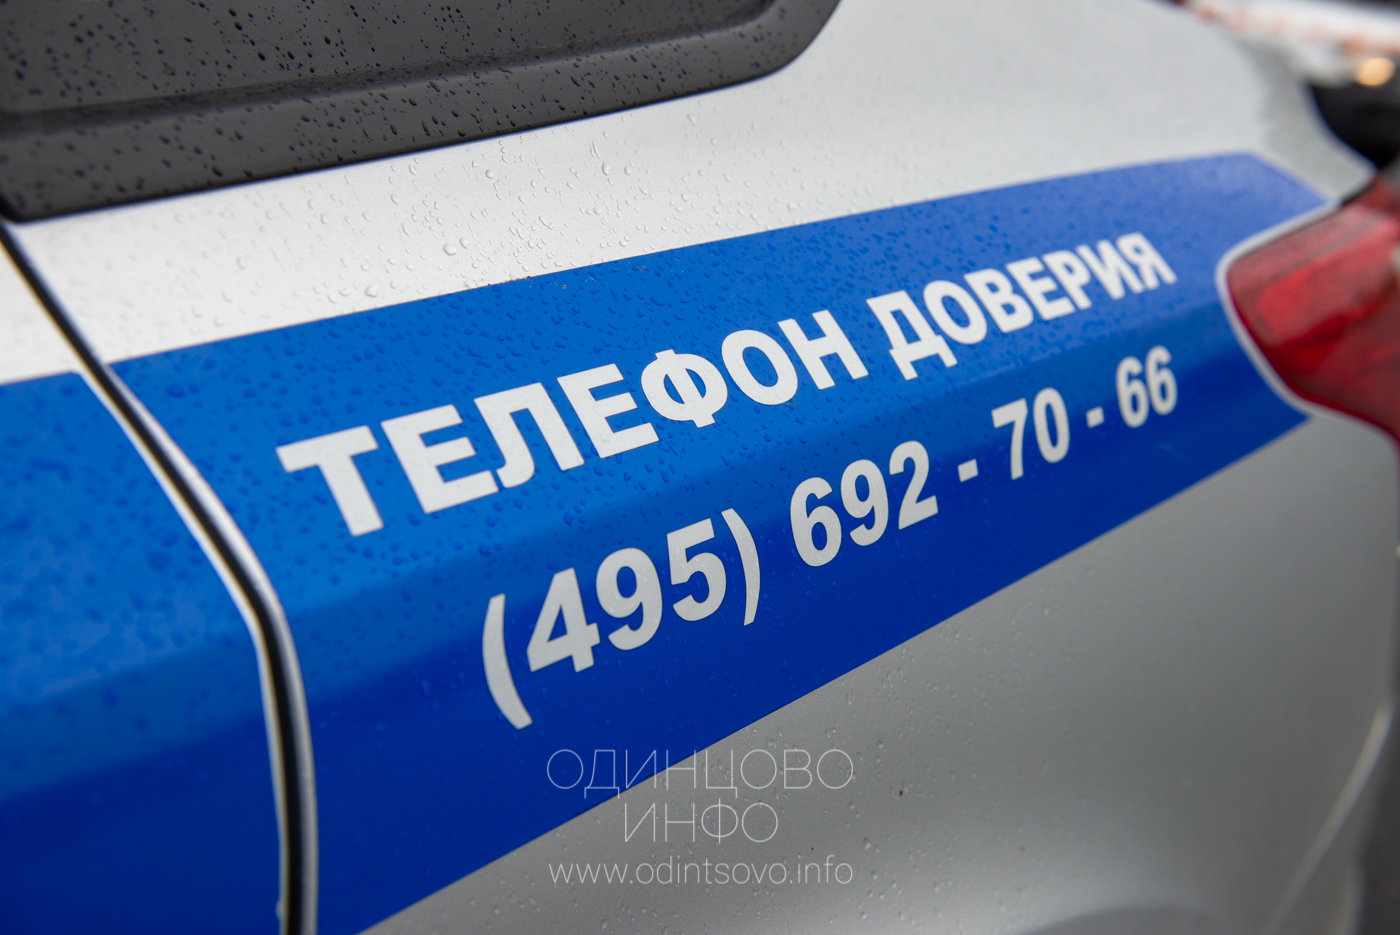 Телефон доверия полиции Крым.